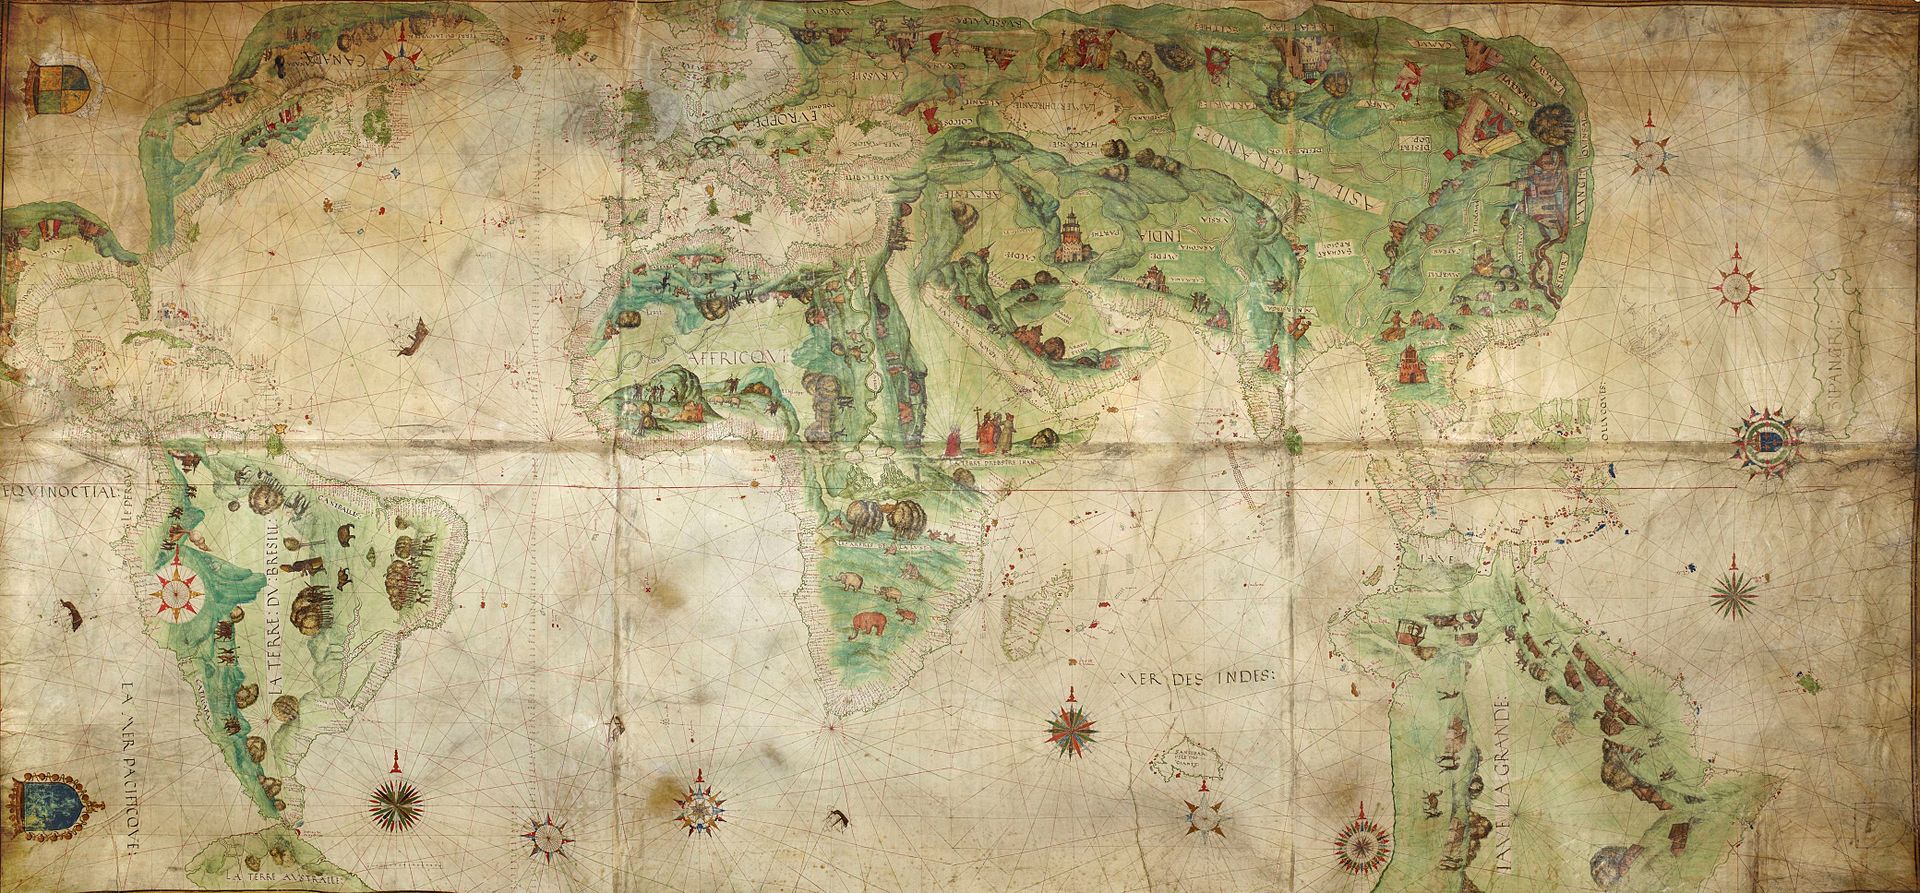 La mappemonde Dauphin (1547), avec une représentation (à droite du document) de l'Australie, appelée Jave La Grande.